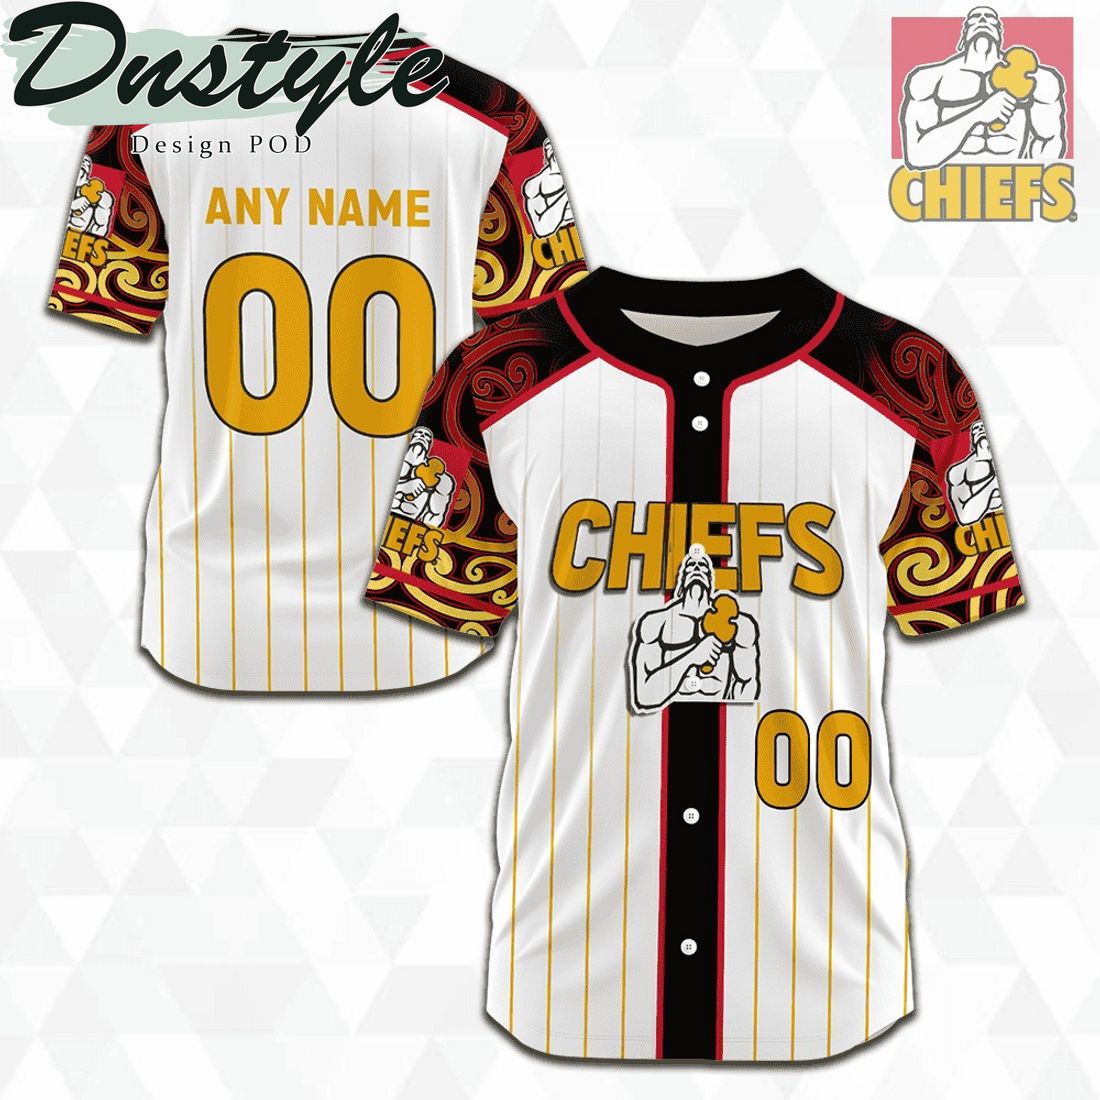 Crusaders 2023 Season Personalized Baseball Jersey